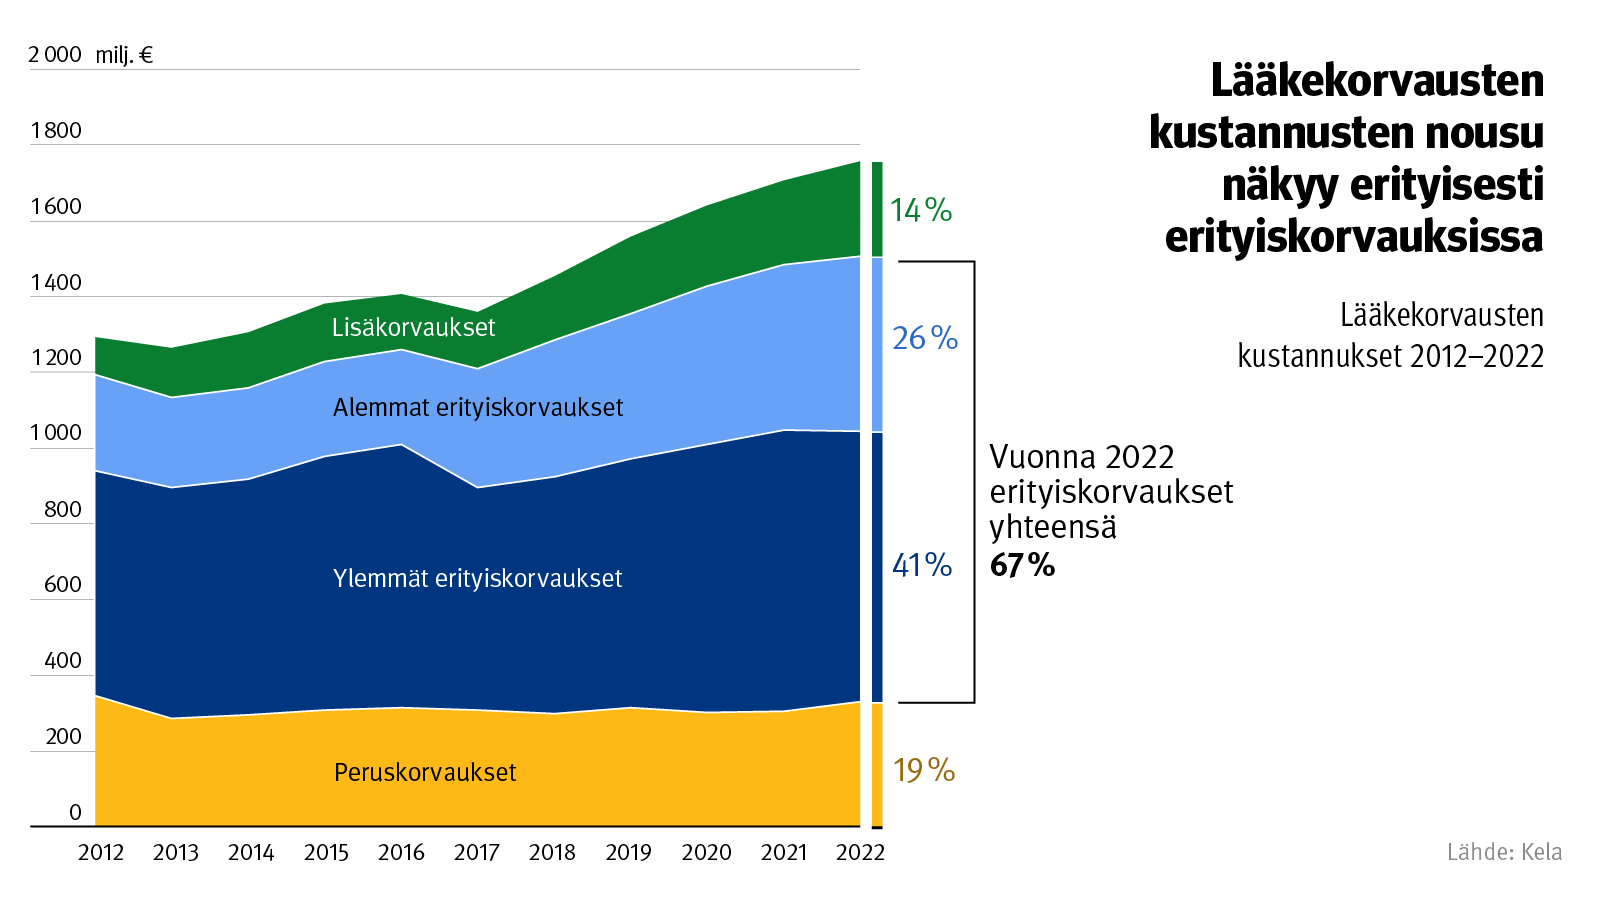 kuvio: lääkekorvausten kustannukset 2012–2022. Kuvasta näkee, että lääkekorvausten kustannukset ovat kasvaneet vuoden 2012 noin 1,3 miljardista vuoden 2022 noin 1,8 miljardiin euroon. Kustannusten nousu johtuu ennen kaikkea erityiskorvausten kasvusta.